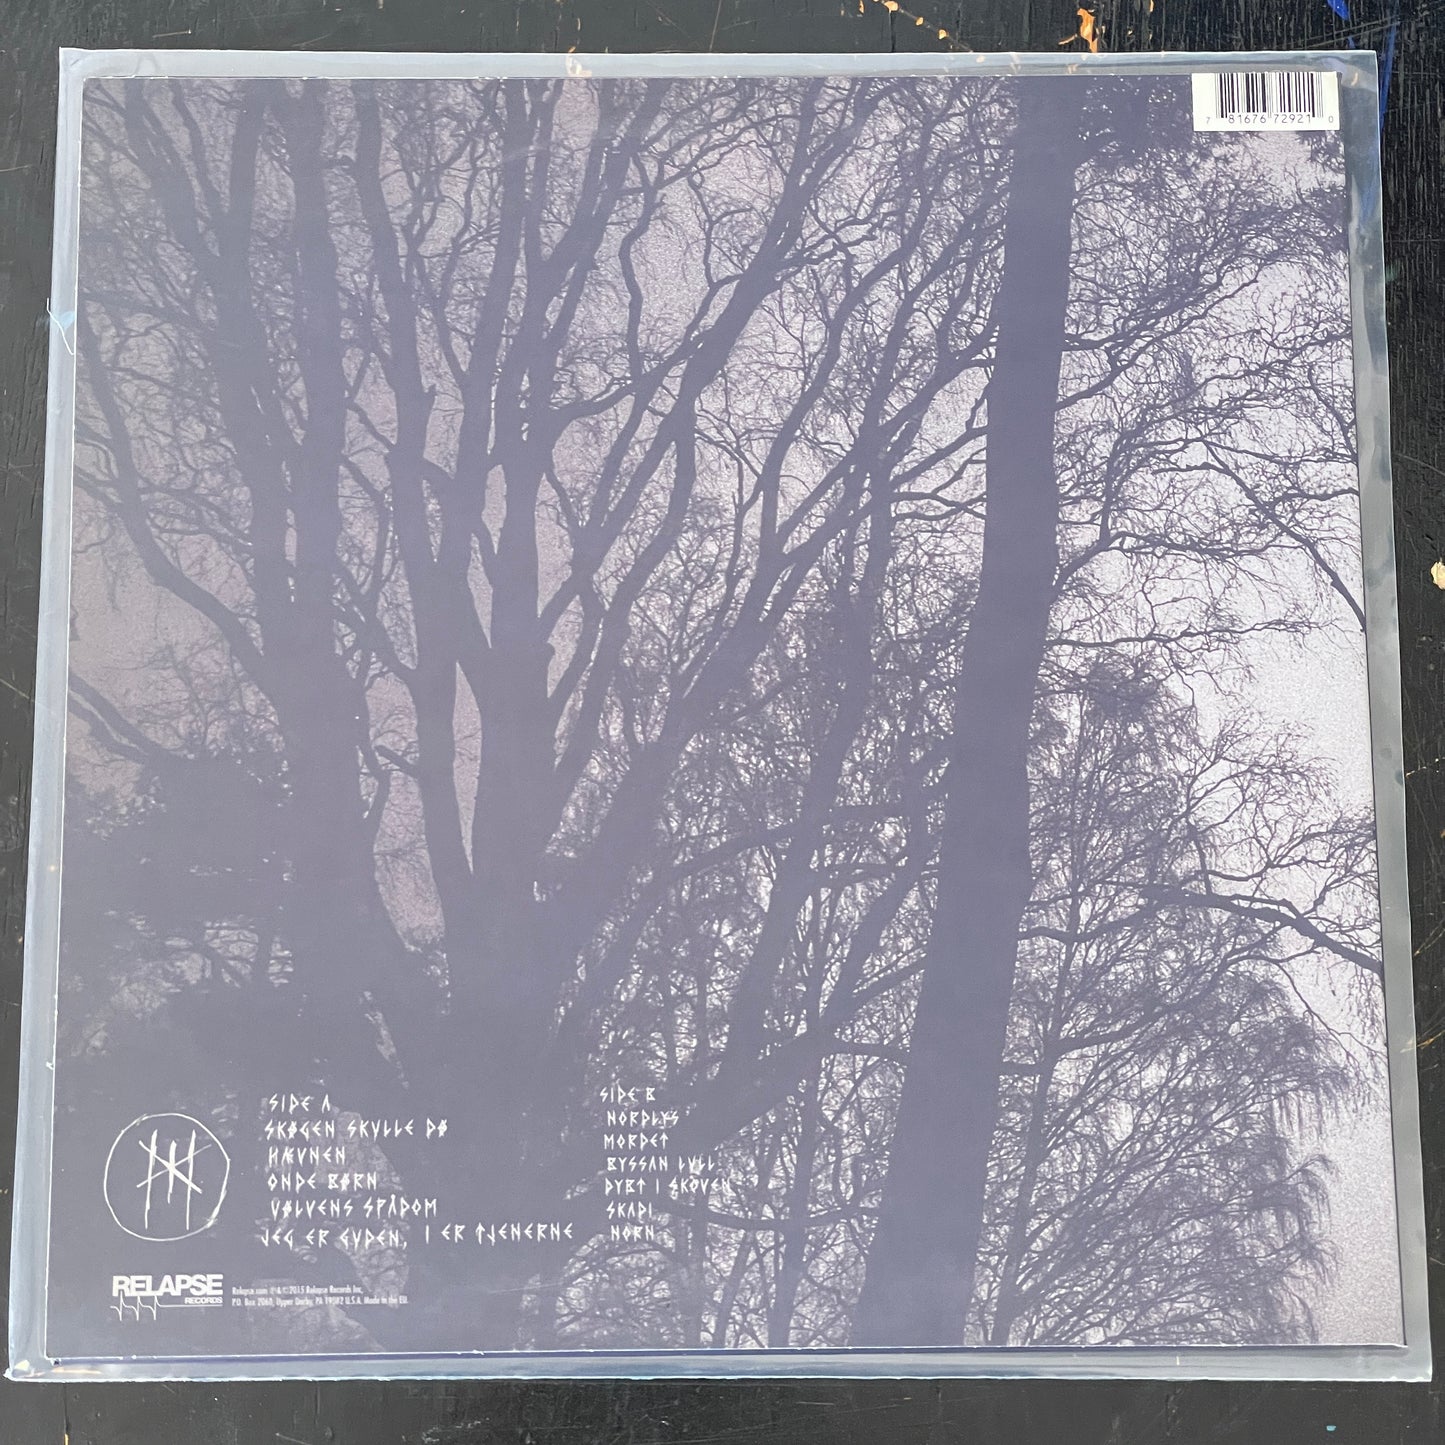 Myrkur - M LP (used)